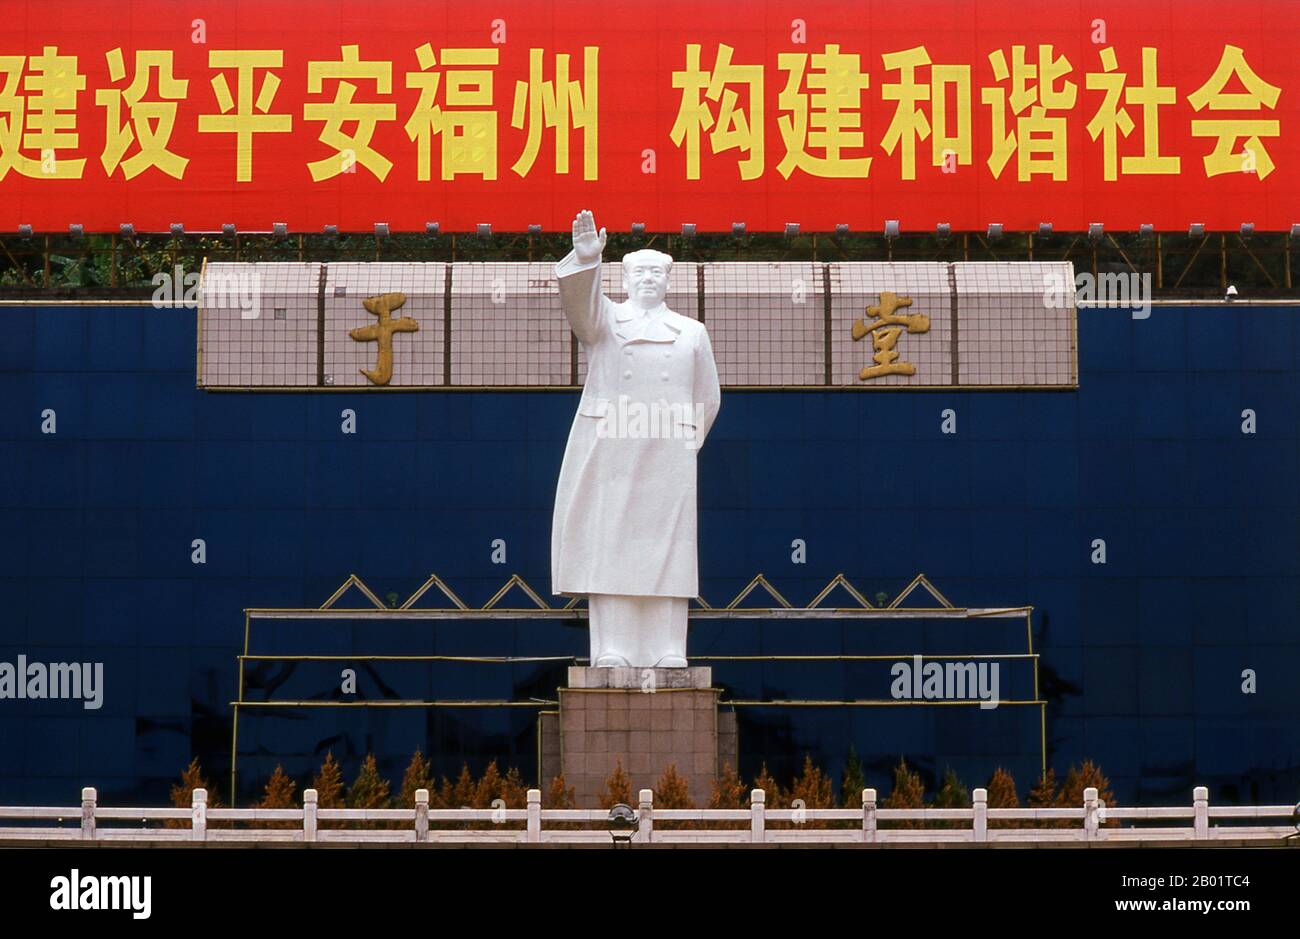 China: Mao Zedong-Statue, Wuyi-Platz, Fuzhou, Provinz Fujian. Mao Zedong, auch bekannt als Mao TSE-tung (* 26. Dezember 1893 bis 9. September 1976), war ein chinesischer kommunistischer Revolutionär, Guerillastratege, Autor, politischer Theoretiker und Führer der chinesischen Revolution. Er wird allgemein als Vorsitzender Mao bezeichnet und war der Architekt der Volksrepublik China (VR China) von ihrer Gründung im Jahr 1949 und hatte bis zu seinem Tod im Jahr 1976 die autoritäre Kontrolle über die Nation. Stockfoto